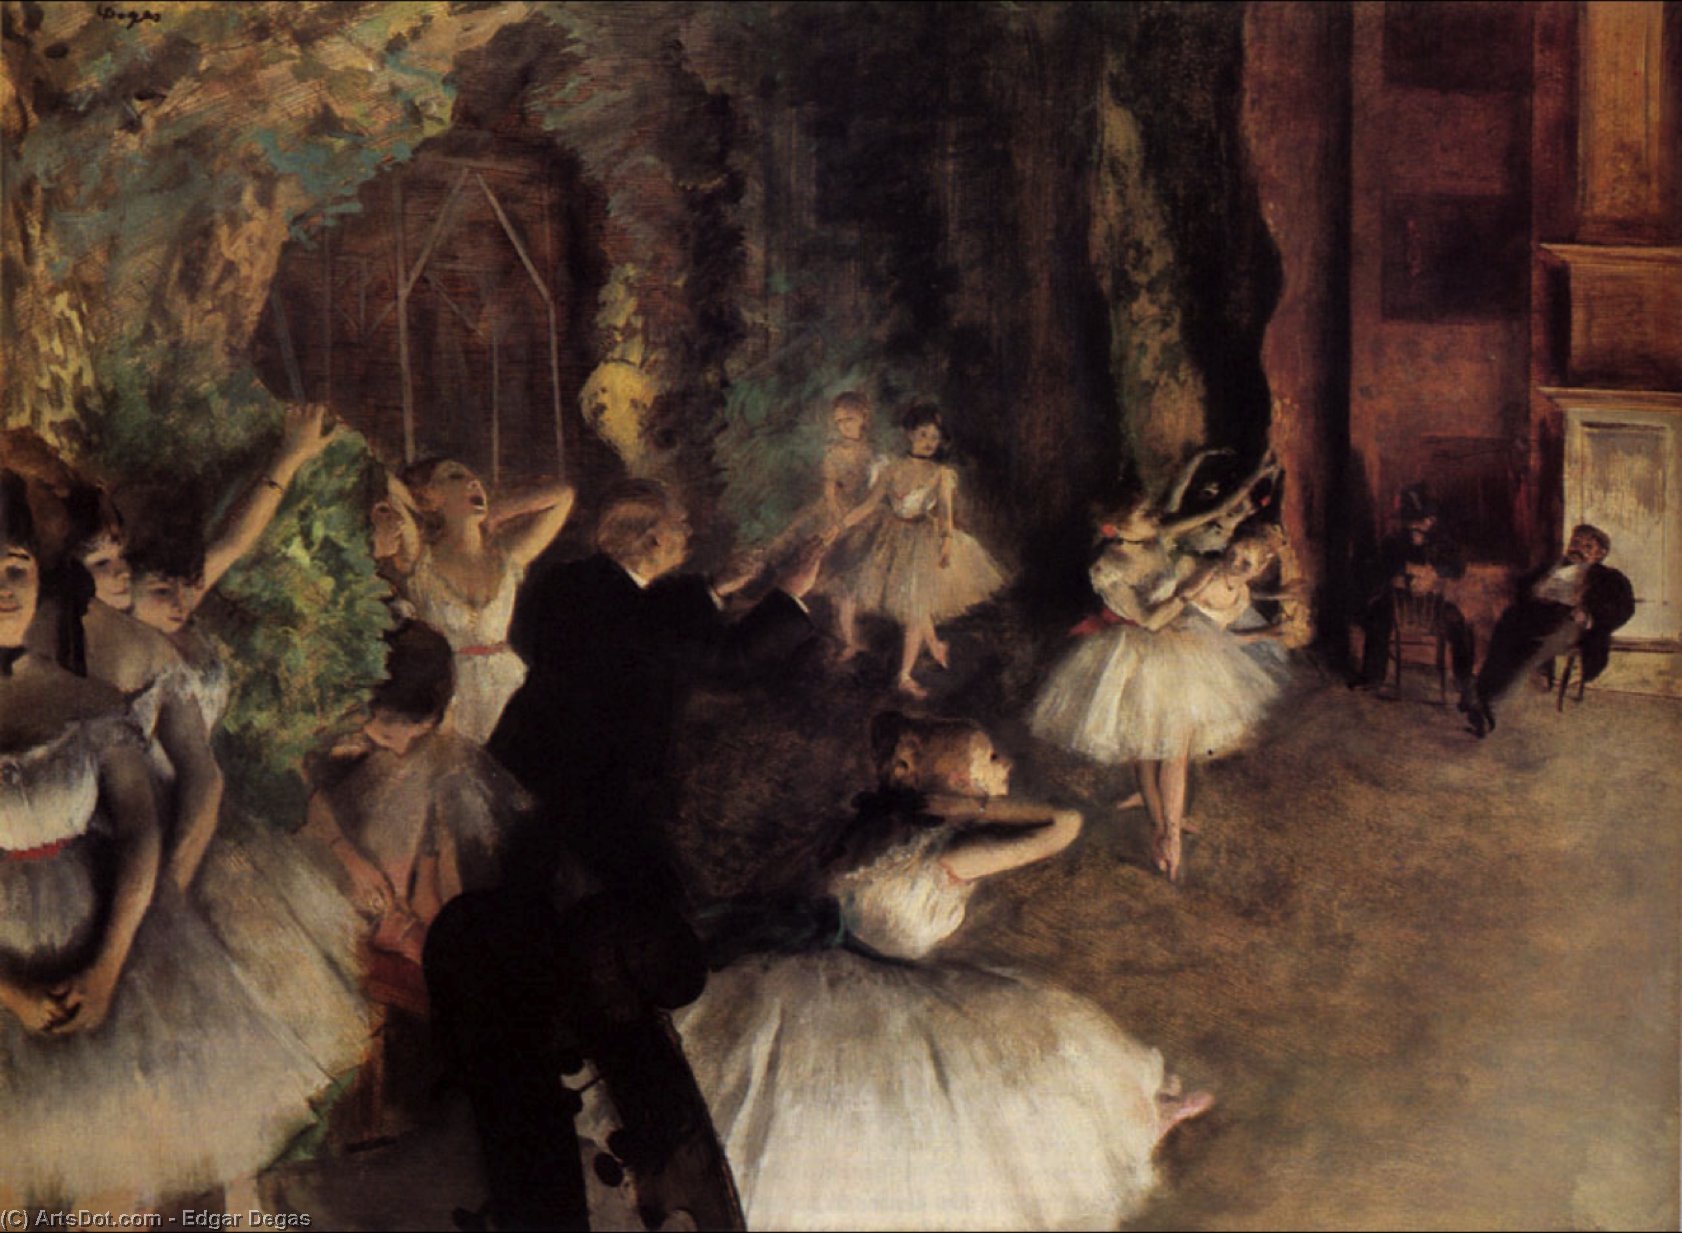 WikiOO.org - אנציקלופדיה לאמנויות יפות - ציור, יצירות אמנות Edgar Degas - The Rehearsal of the Ballet on Stage